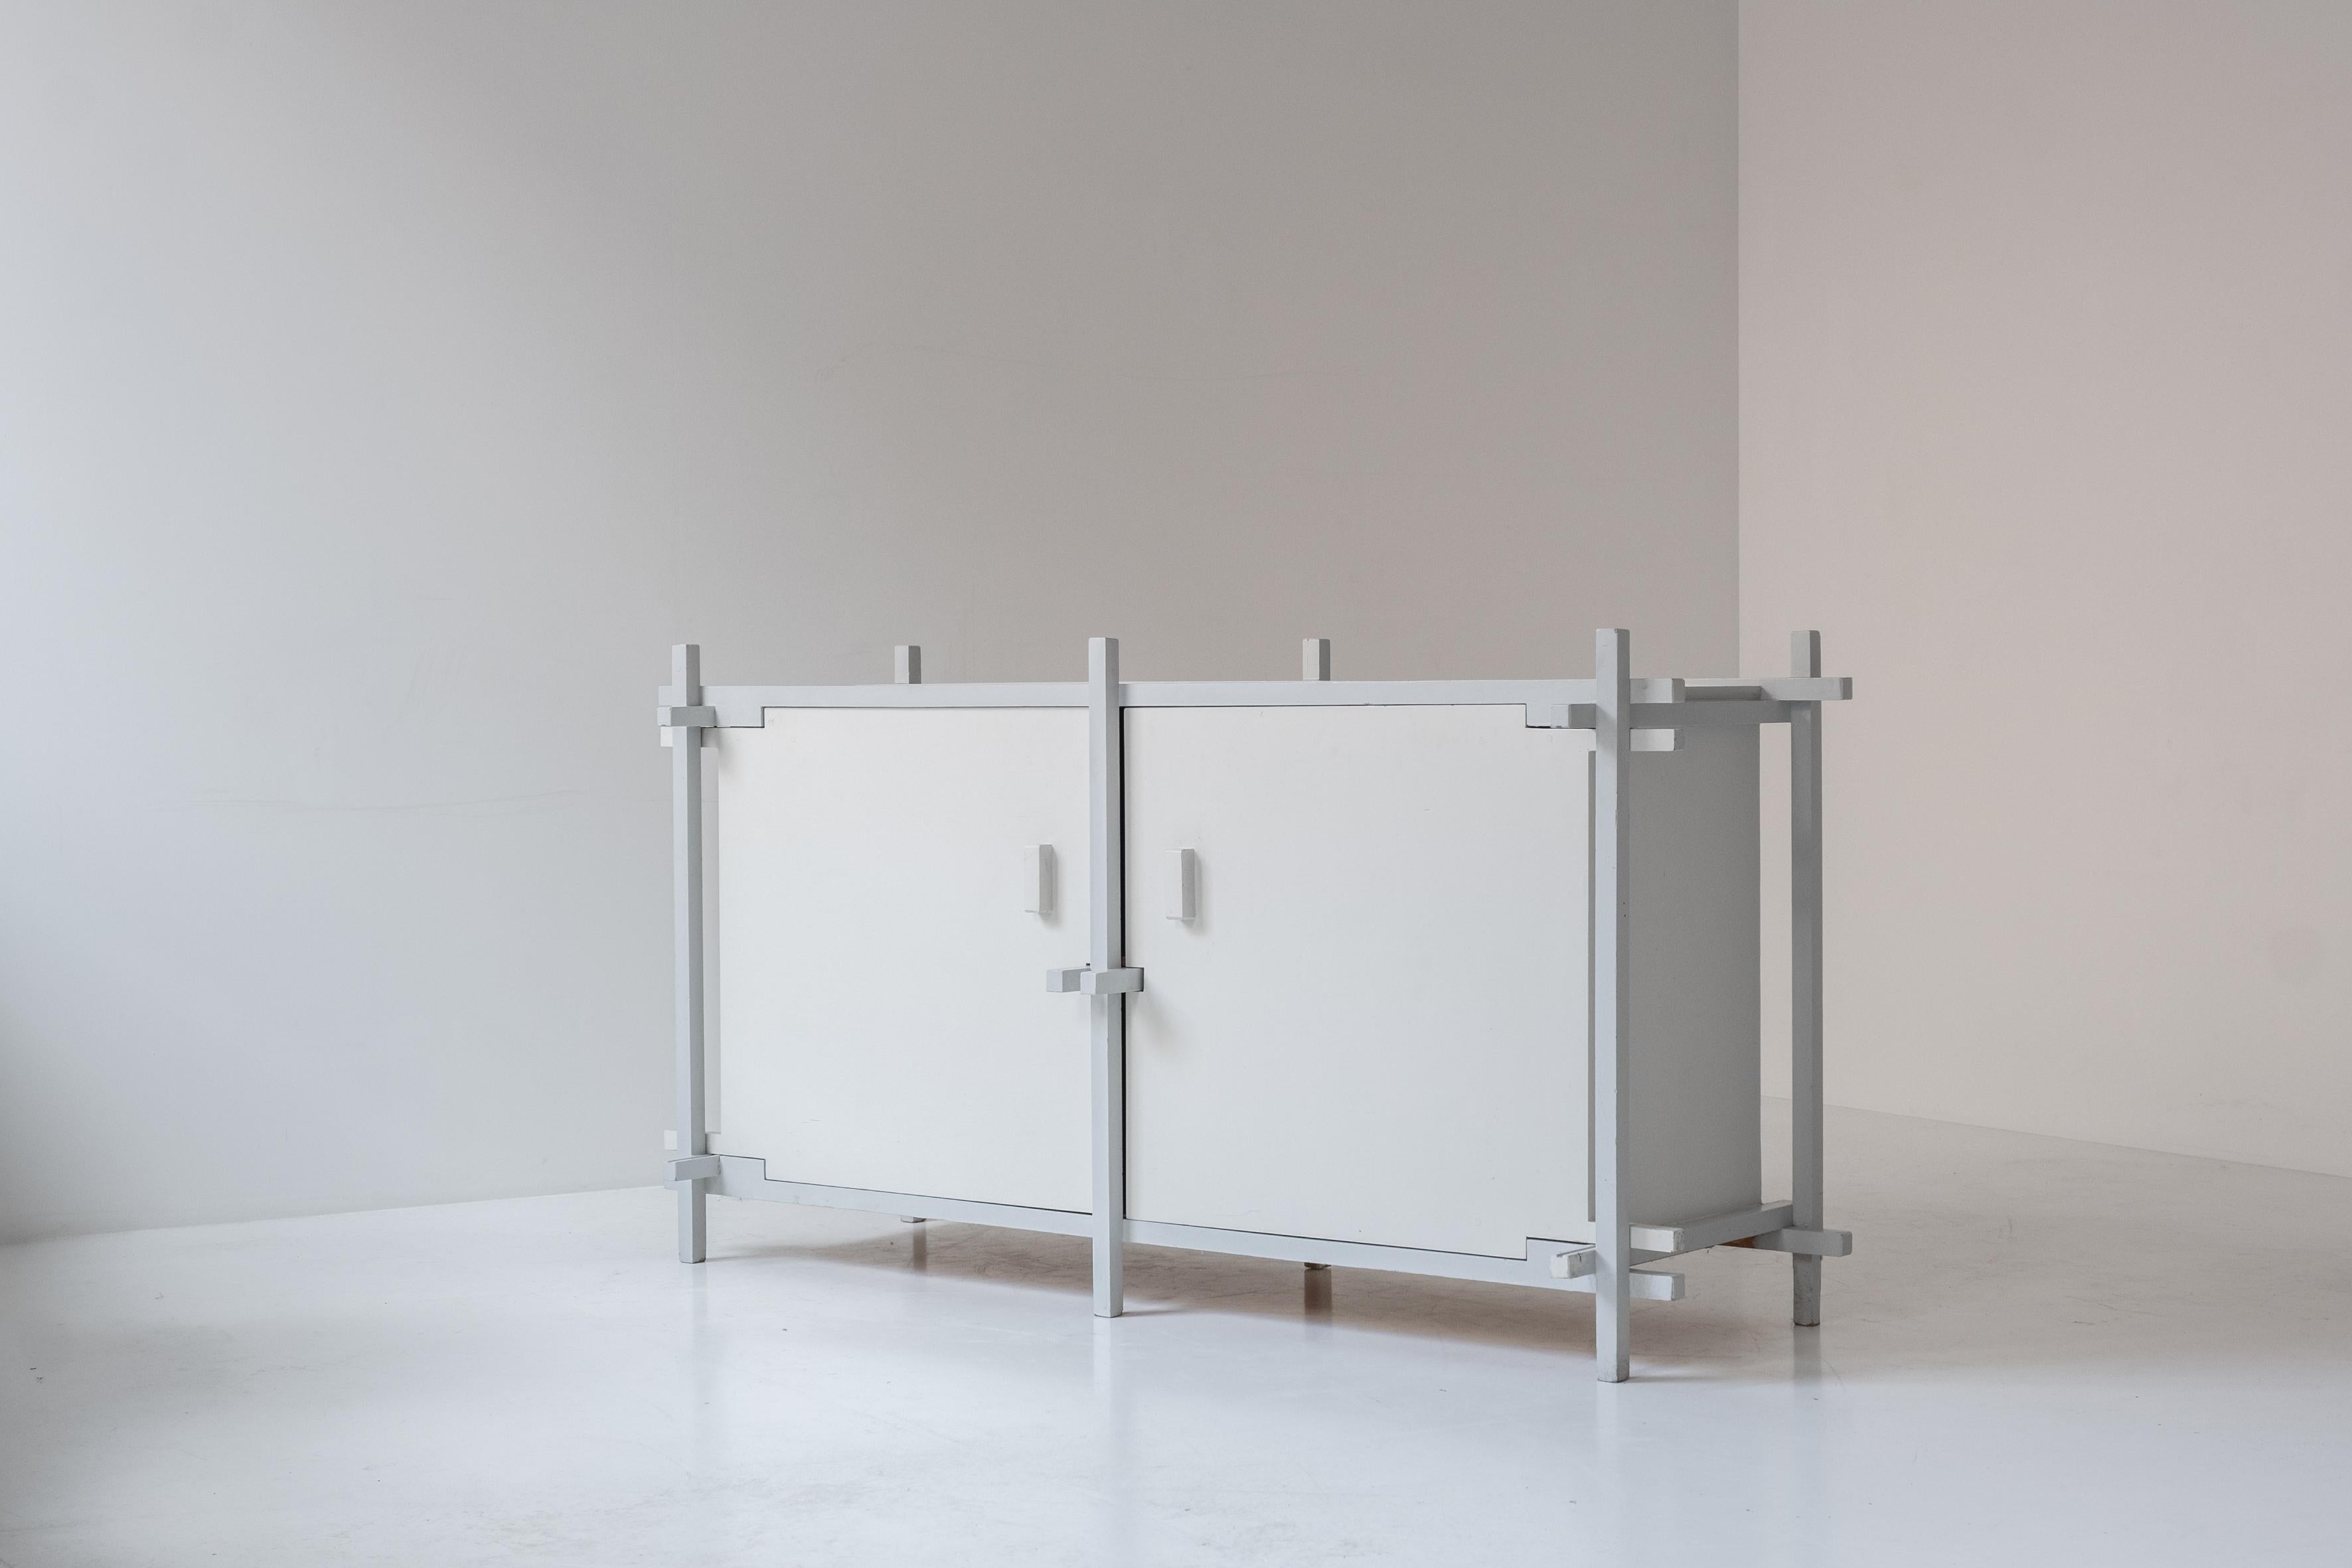 Handgefertigtes Sideboard, entworfen im Stil des berühmten niederländischen Designers Gerrit Rietveld. Dieses einzigartige Stück ist sowohl ein funktionales Möbelstück als auch eine Hommage an Rietvelds ikonische Entwürfe. Die gekonnt und doch naiv